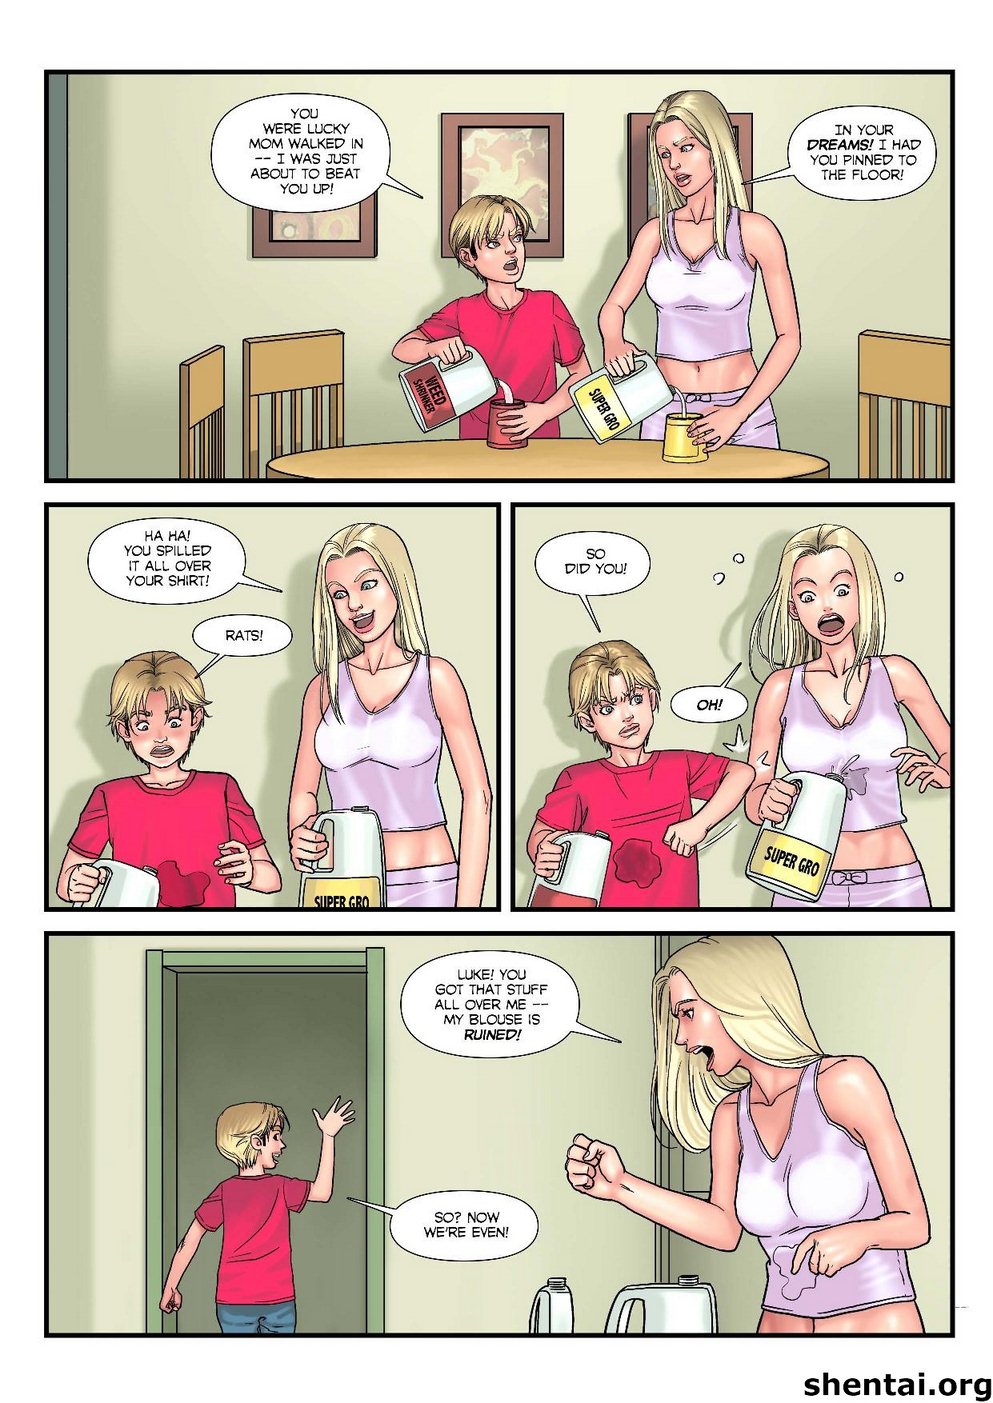 Cartoon Moms Xxx Comics